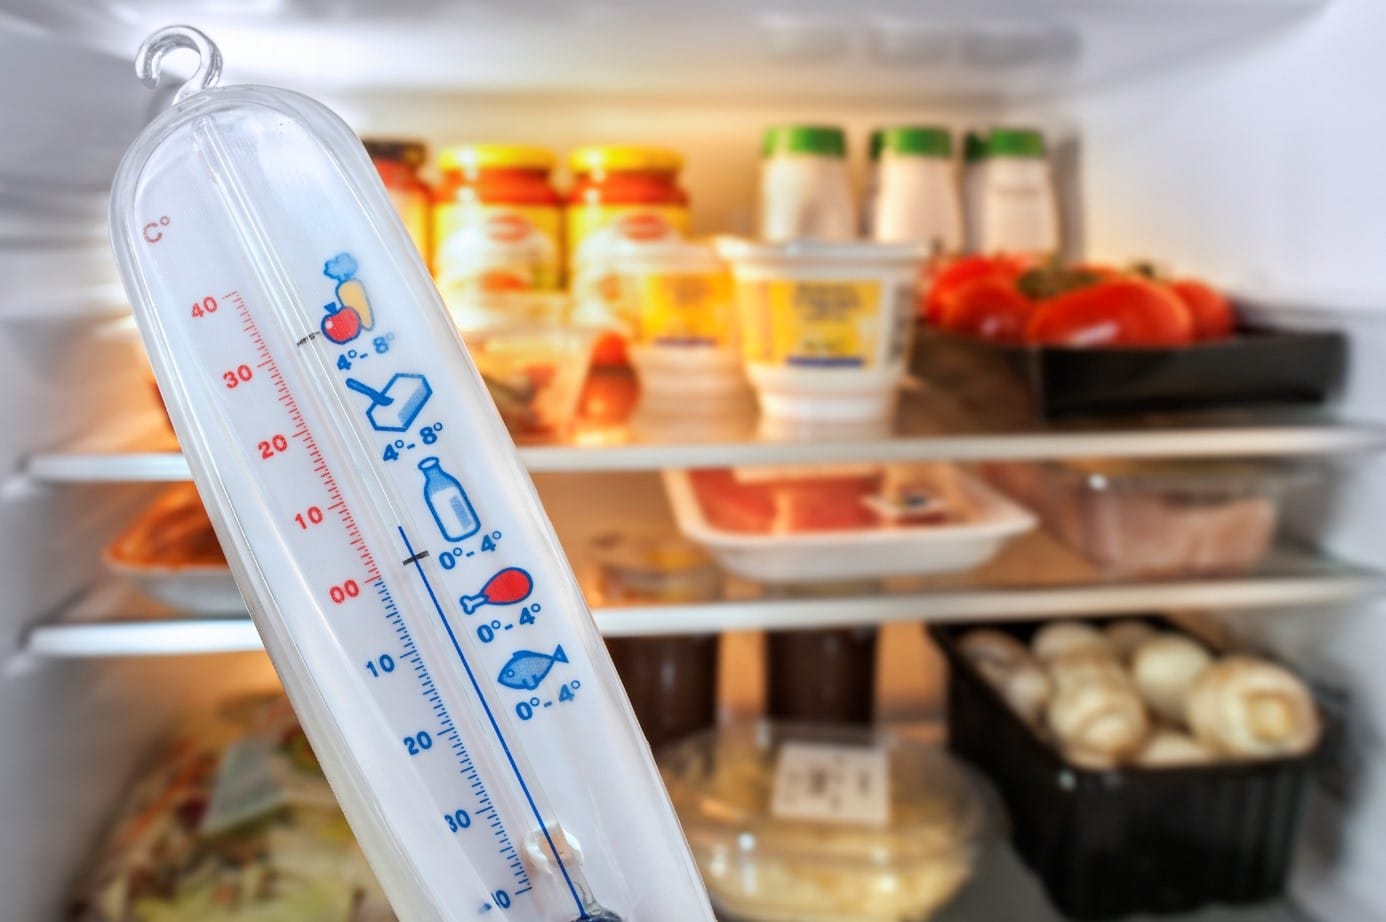 Réfrigérateur : quelle est la température idéale pour un frigo ?